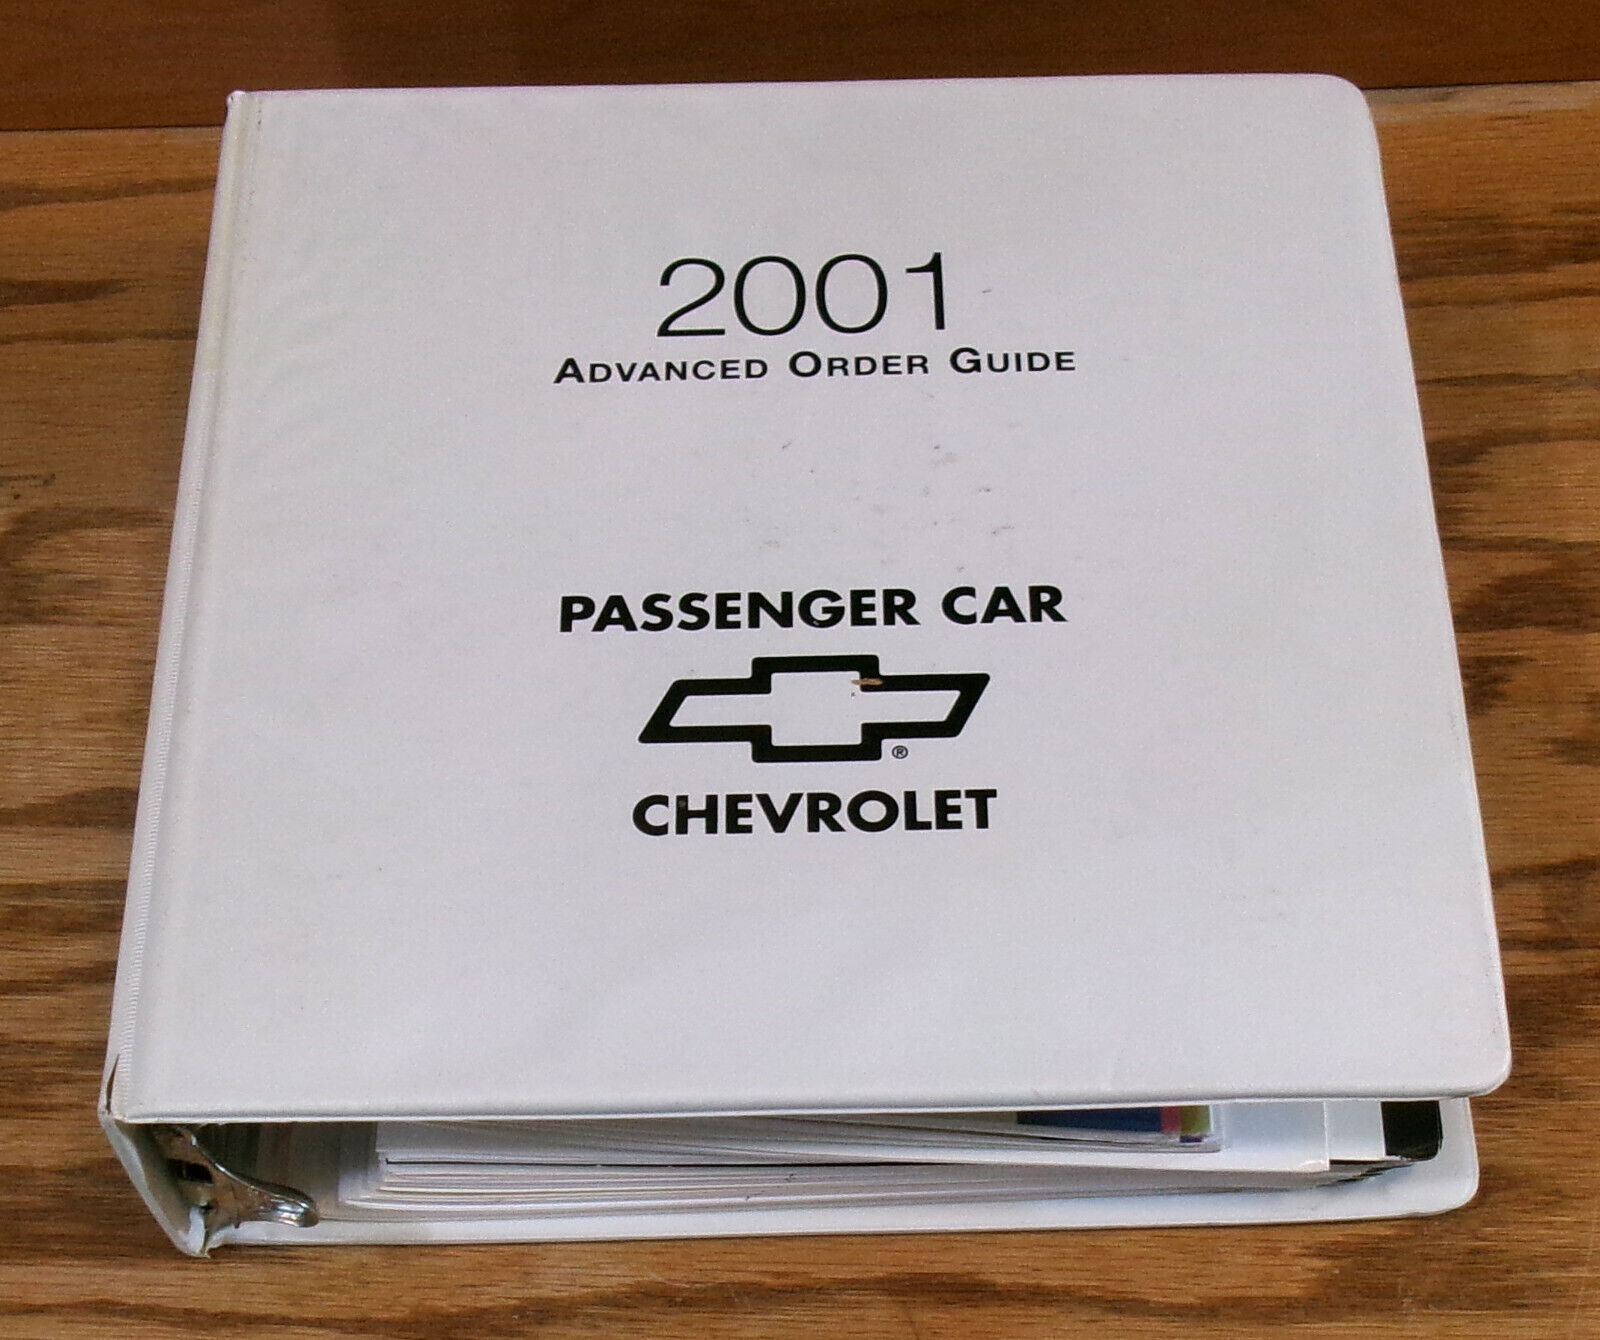 2001 Chevrolet Passenger Car Advanced Order Guide Dealer Album Corvette Camaro